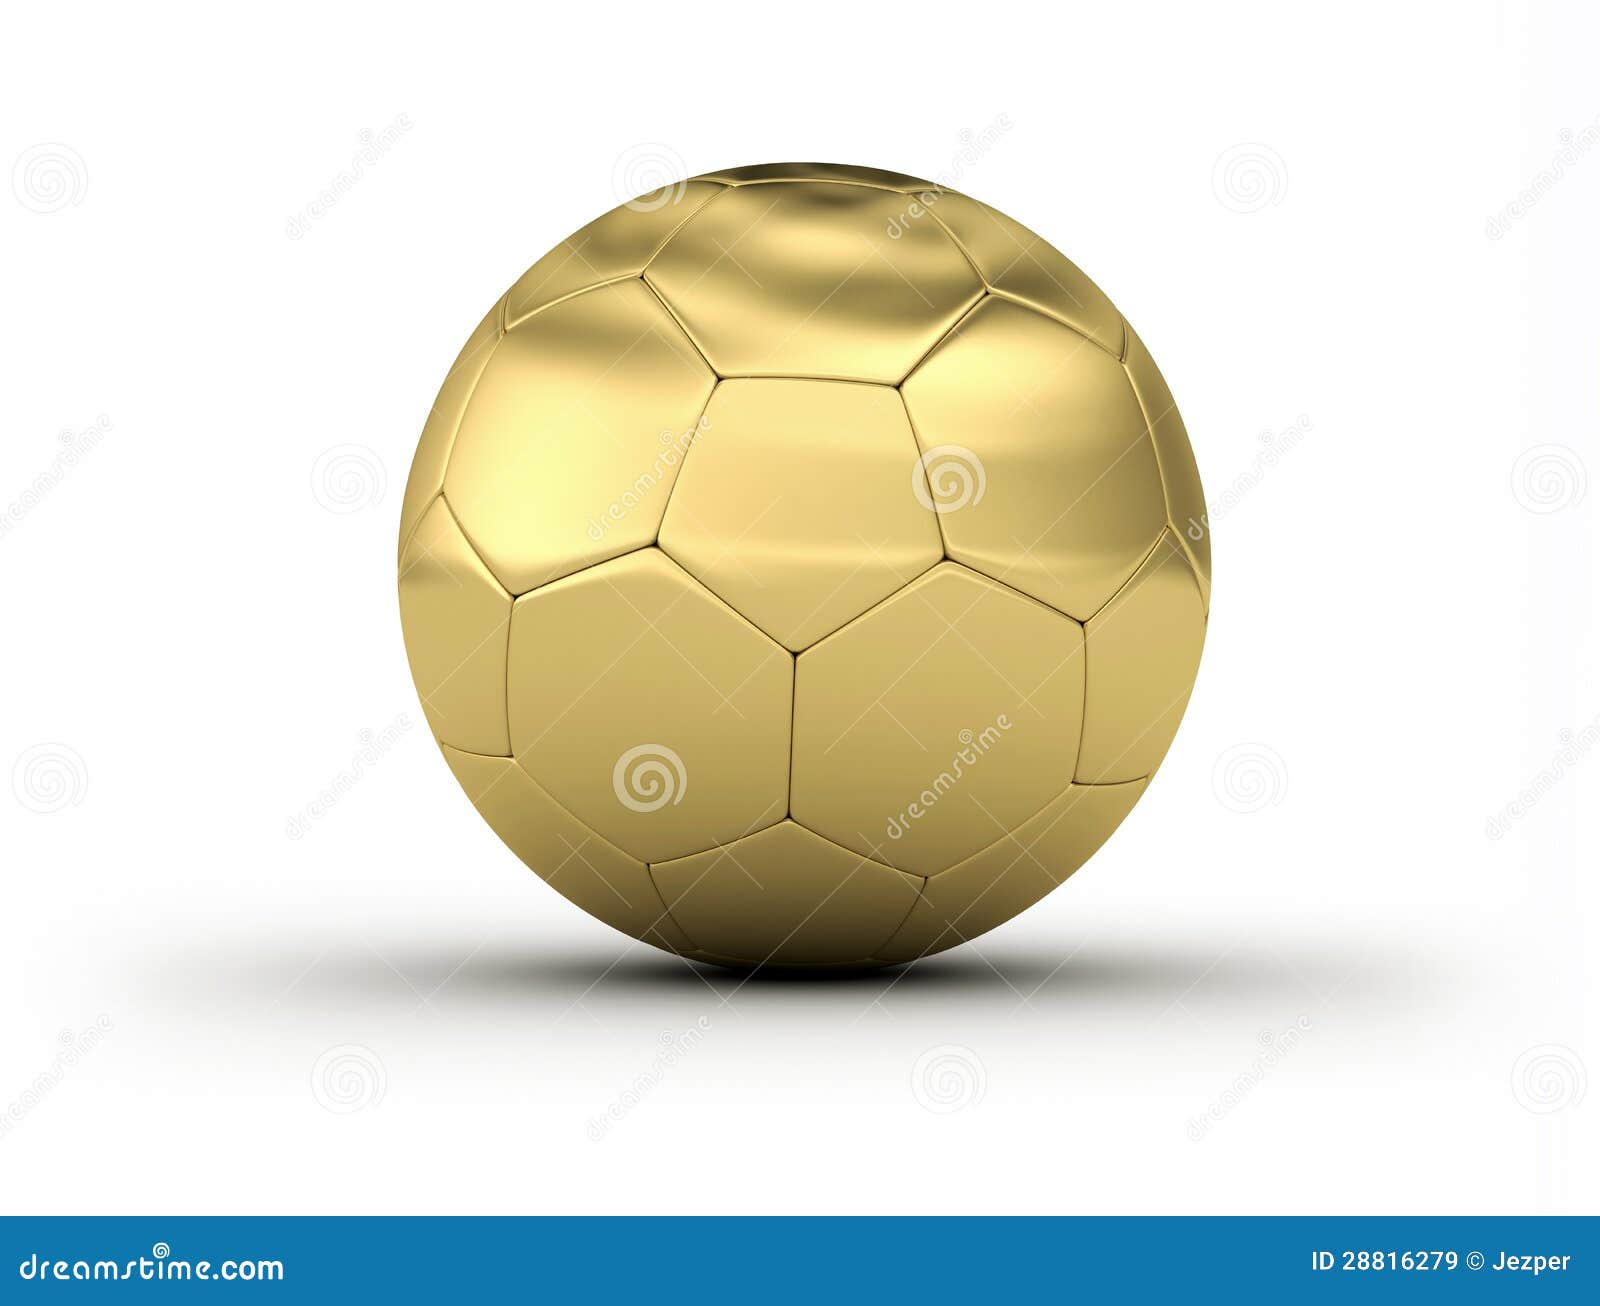 Golden Soccer Ball stock illustration. Illustration of prize - 28816279